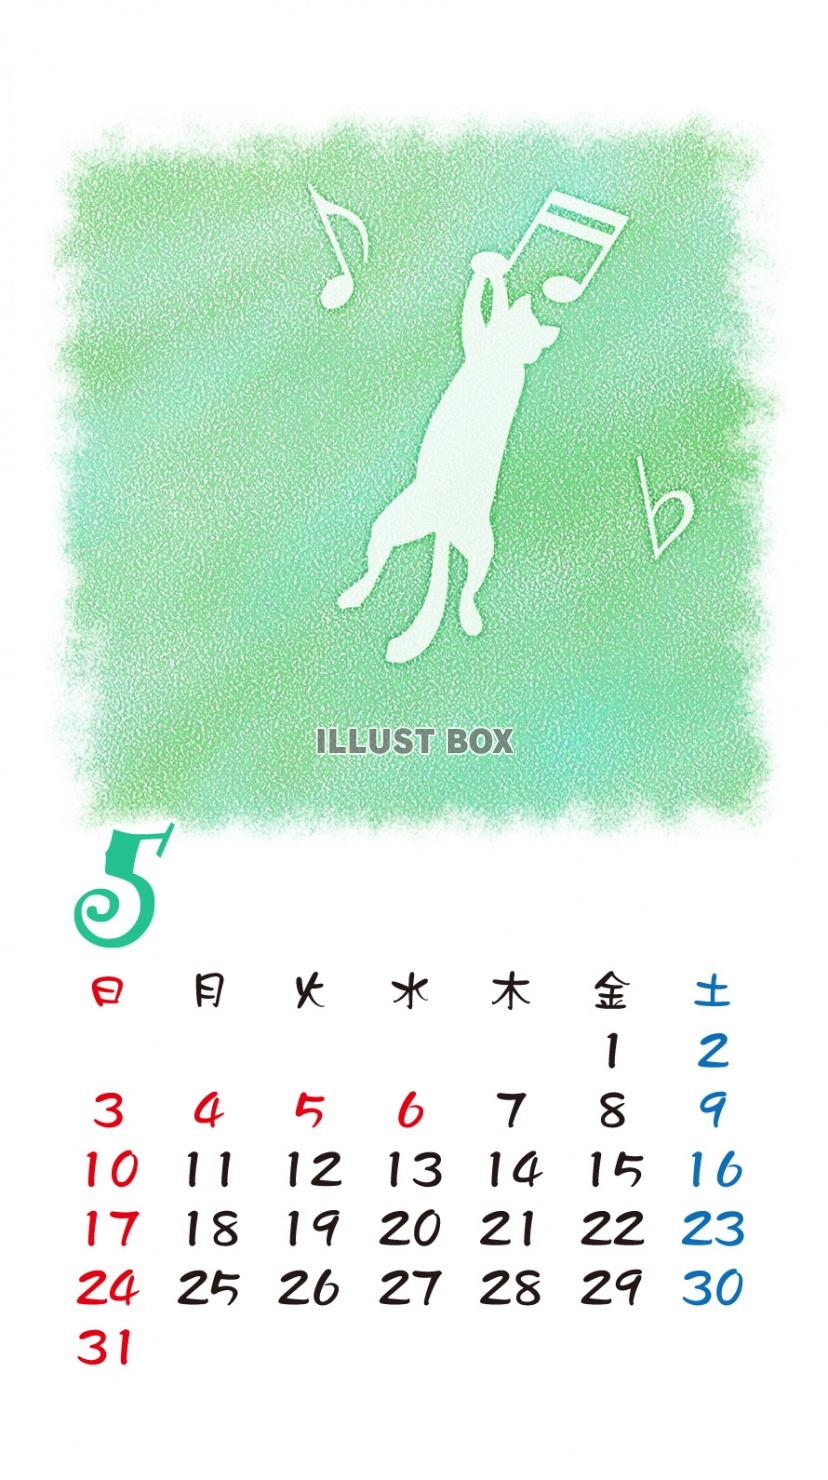 無料イラスト Iphone6用 カレンダー 猫シルエットパステル調 5月